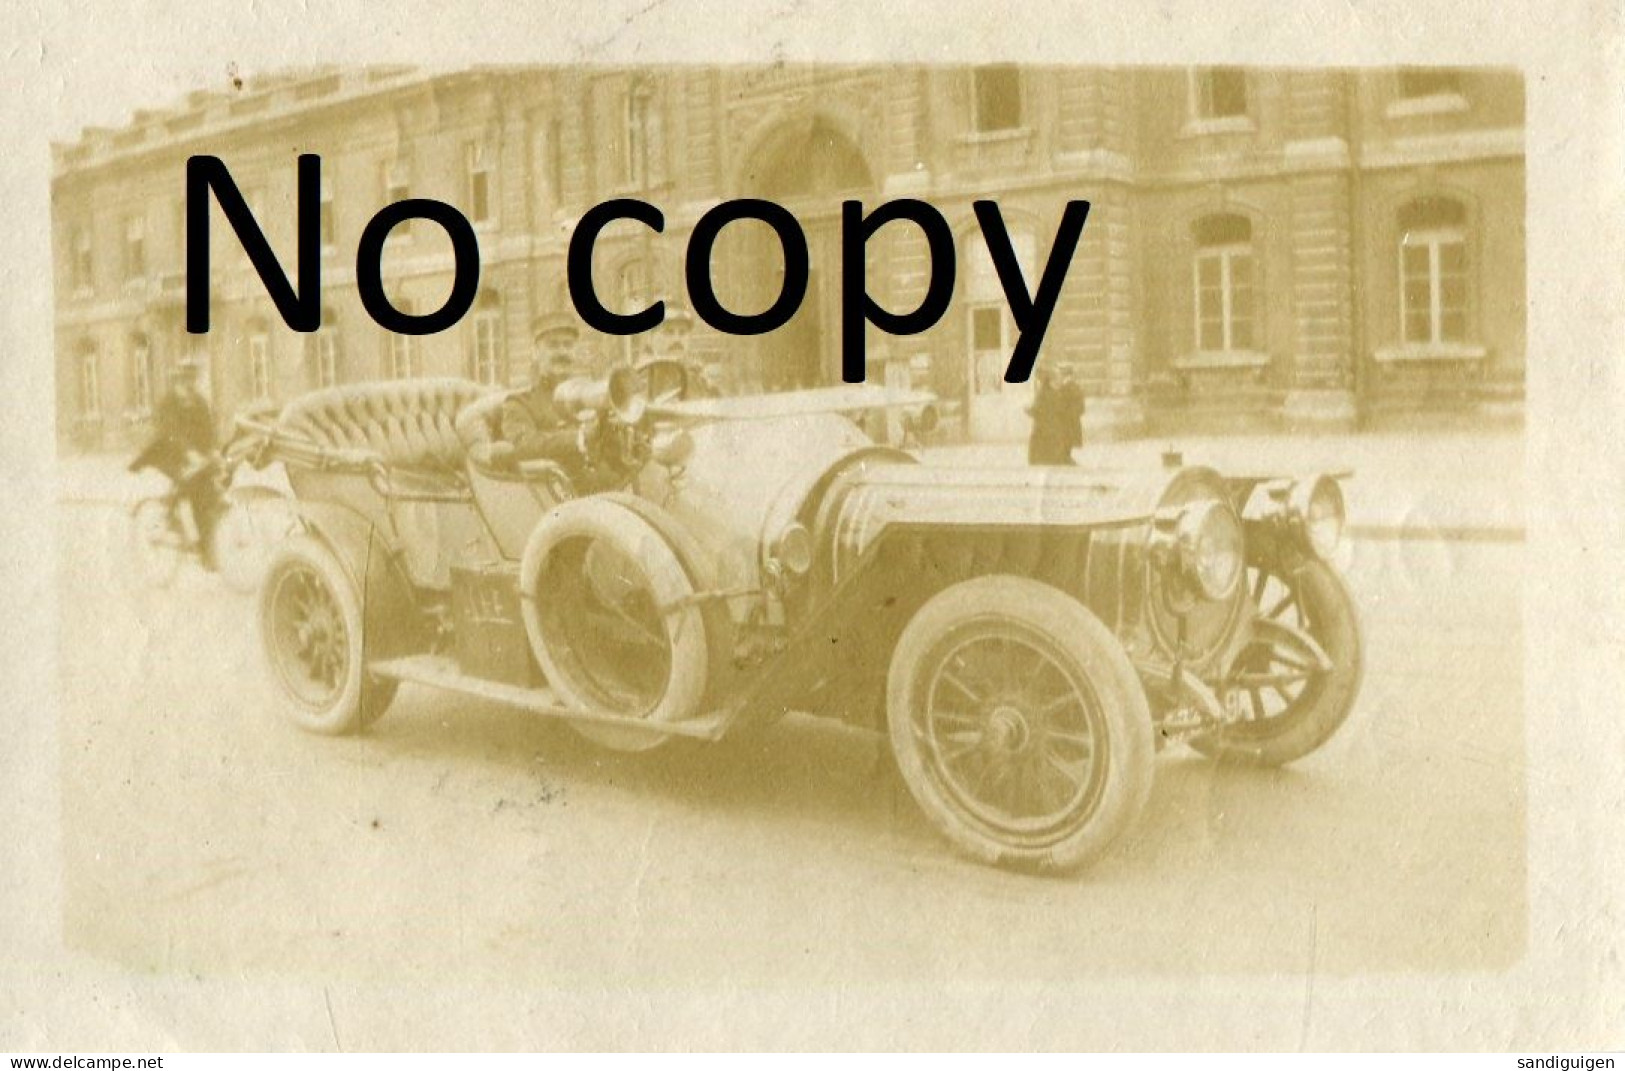 PHOTO FRANCAISE - A LYON RHONE - OFFICIERS EN AUTOMOBILE PARTANT POUR LE REGIMENT LE 2 AOUT 1914 - GUERRE 1914 1918 - Krieg, Militär